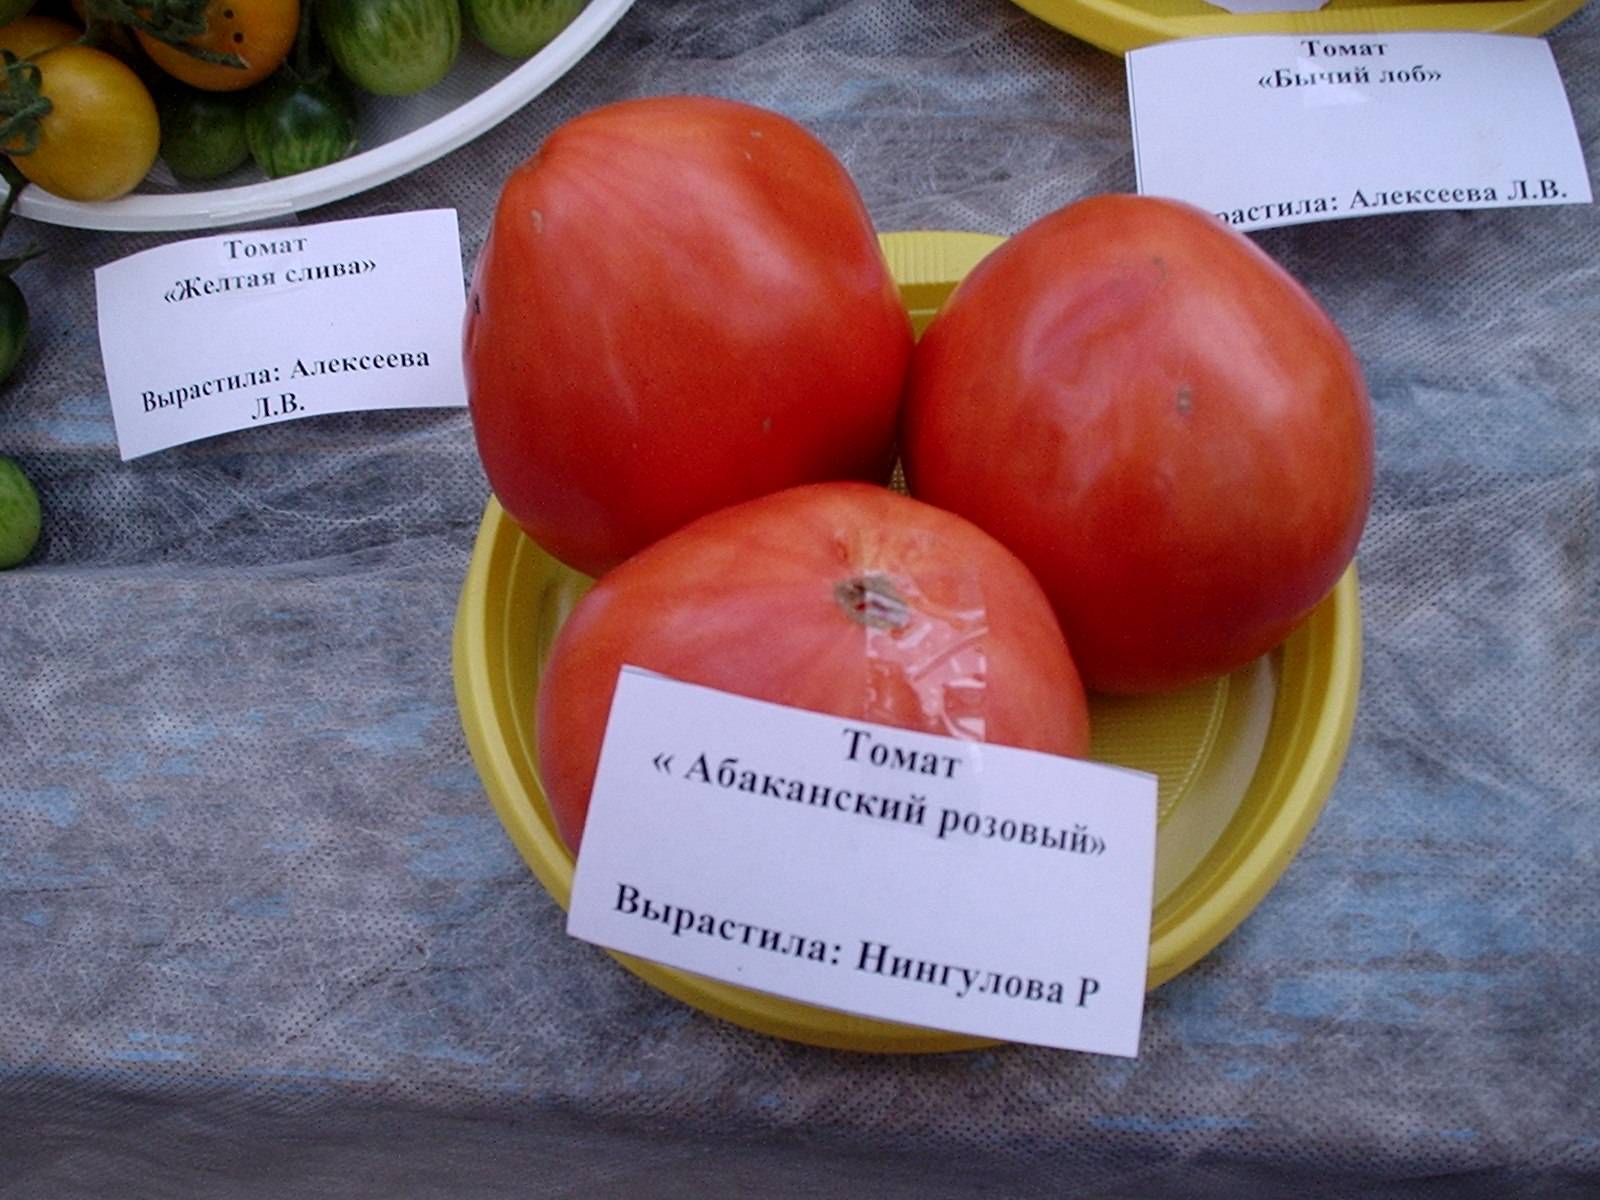 Томаты "лентяйка": описание сорта, фото помидоров, основные характеристики русский фермер